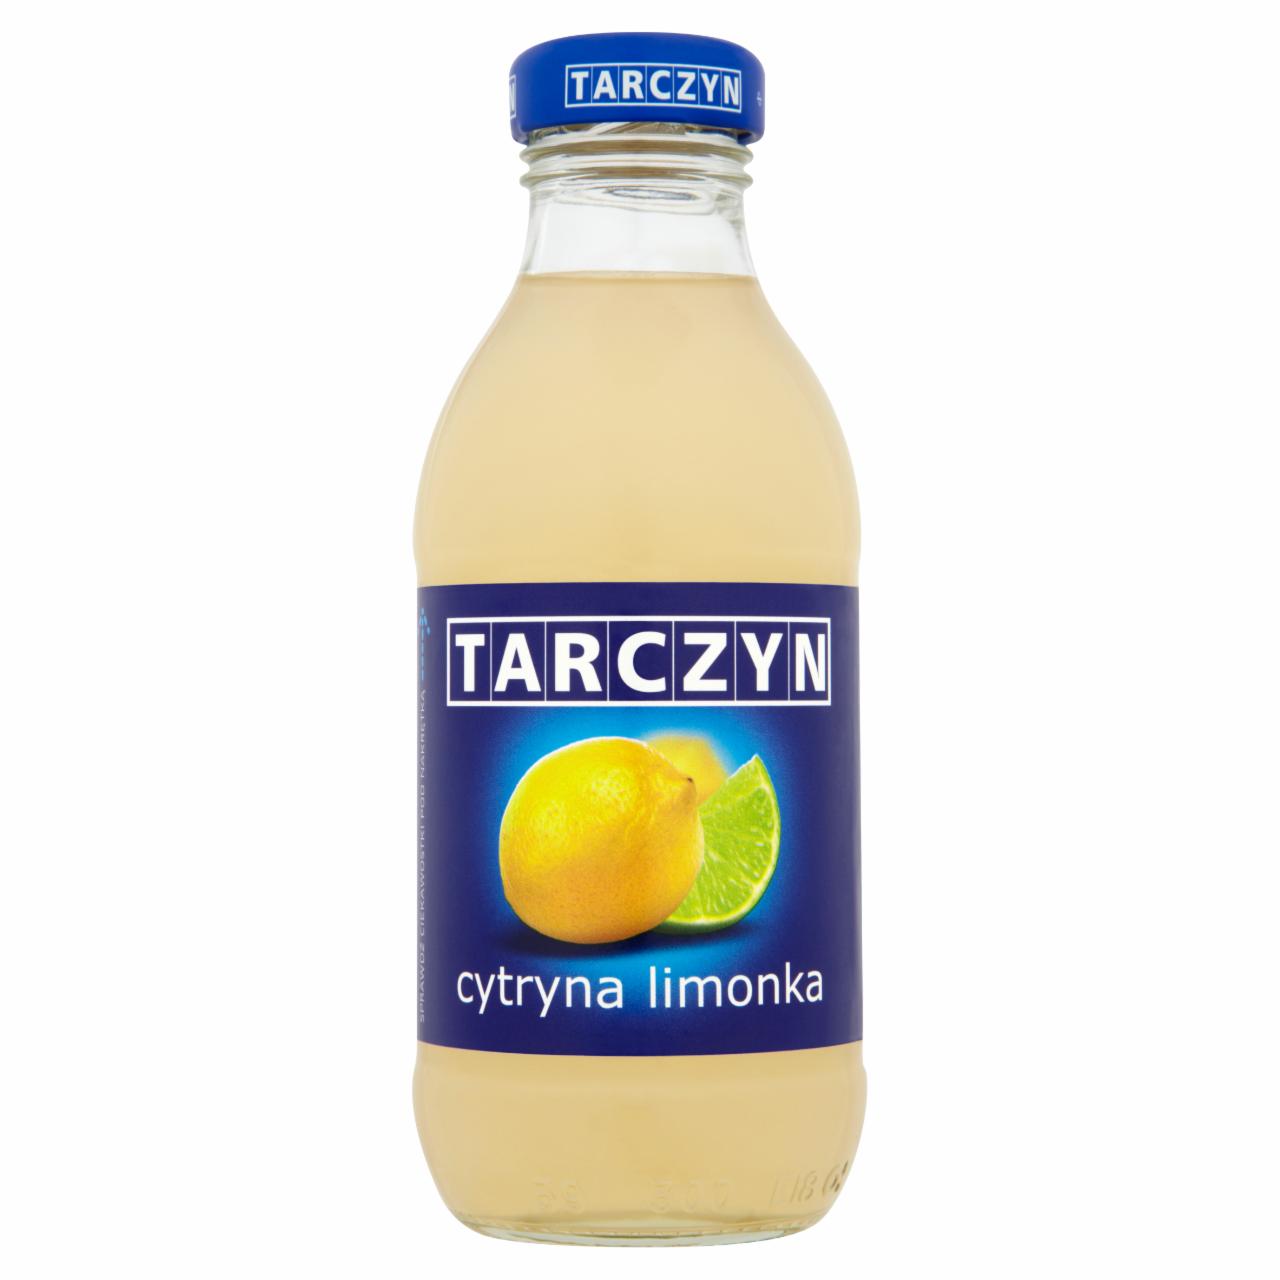 Zdjęcia - Tarczyn Cytryna limonka Napój 300 ml